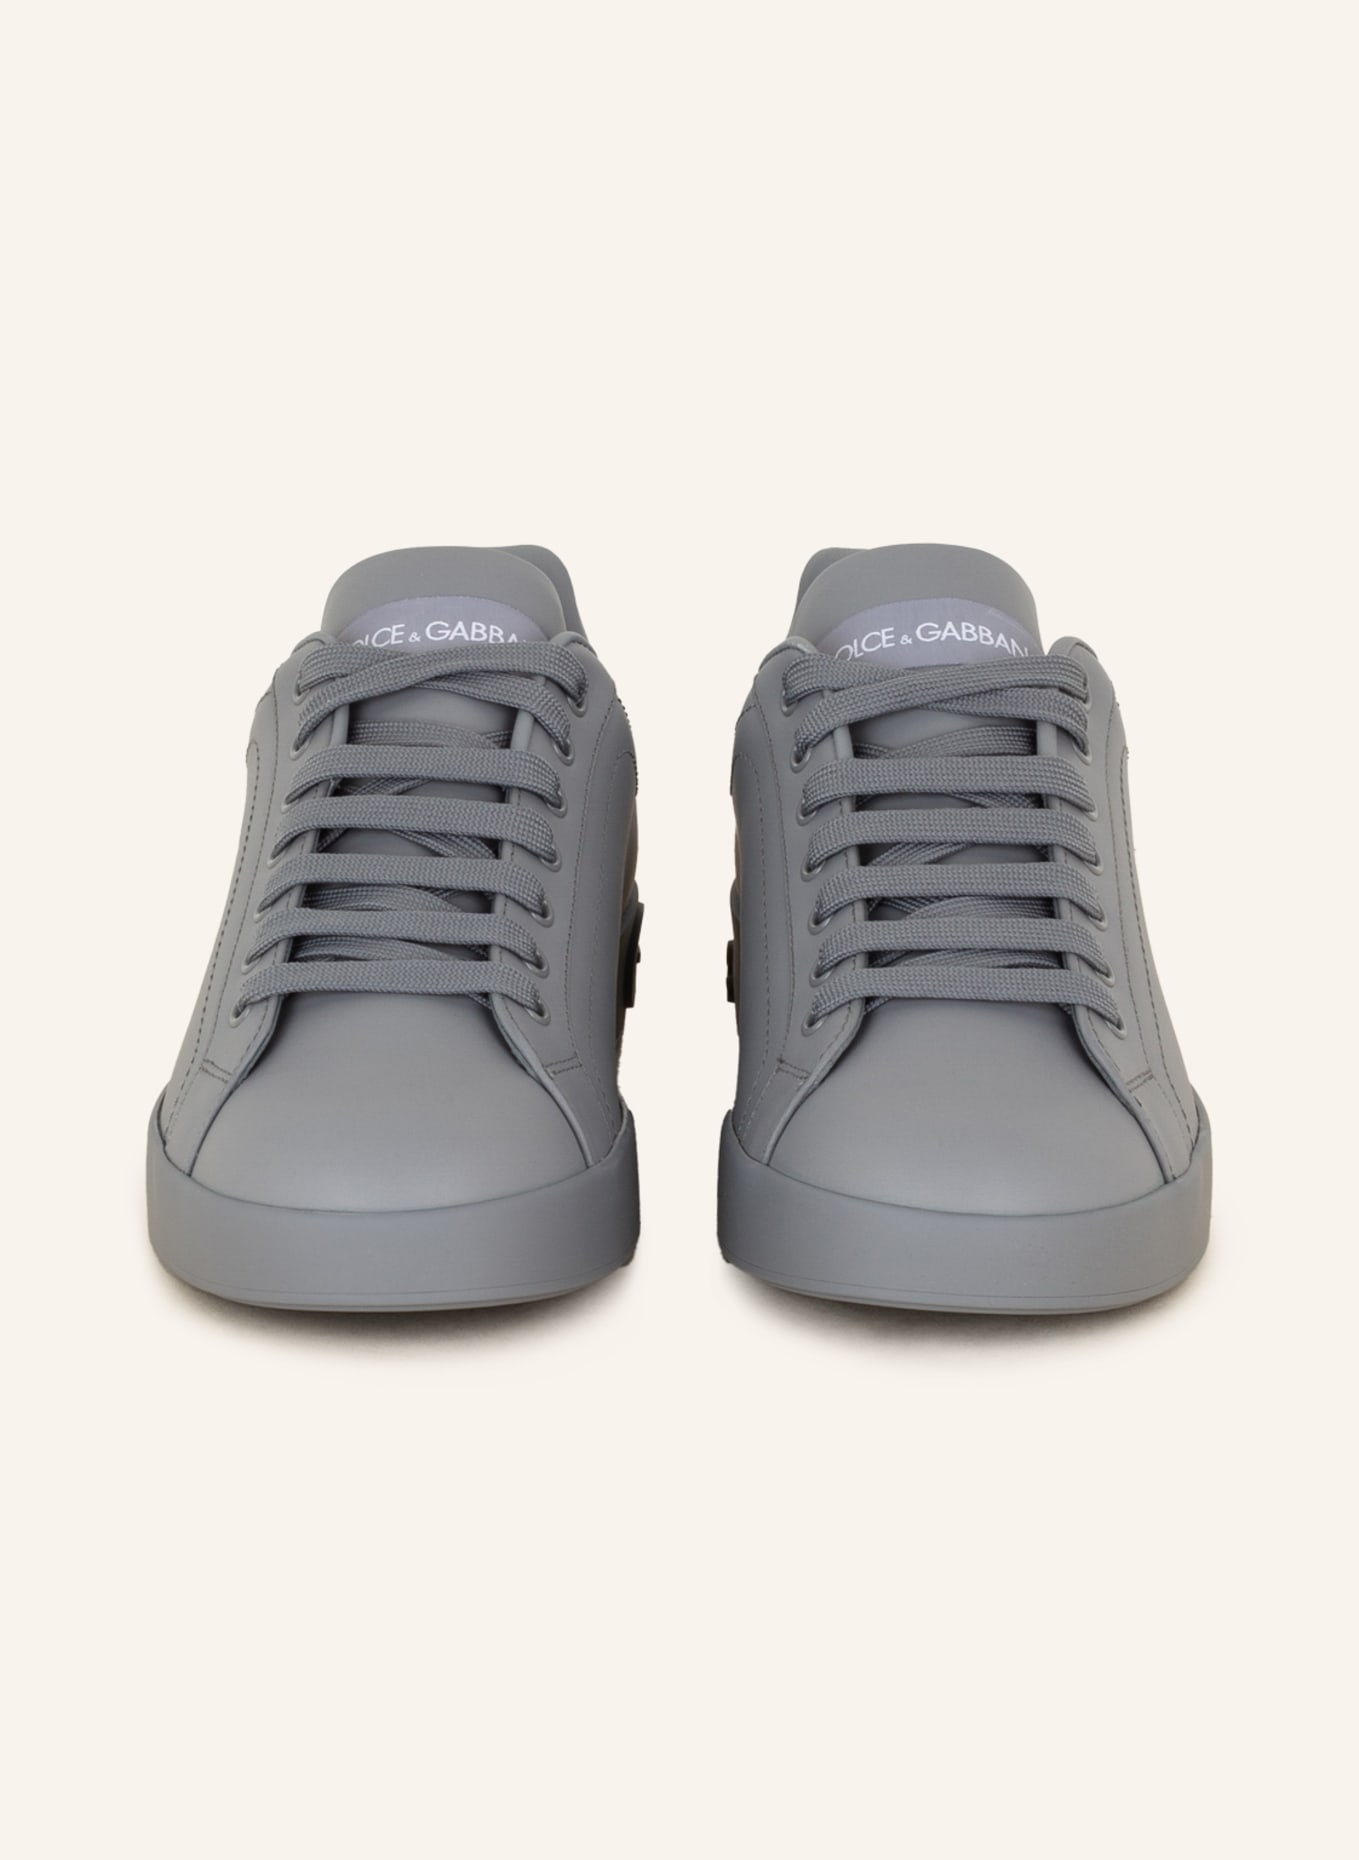 DOLCE & GABBANA Sneakers PORTOFINO, Color: GRAY (Image 3)